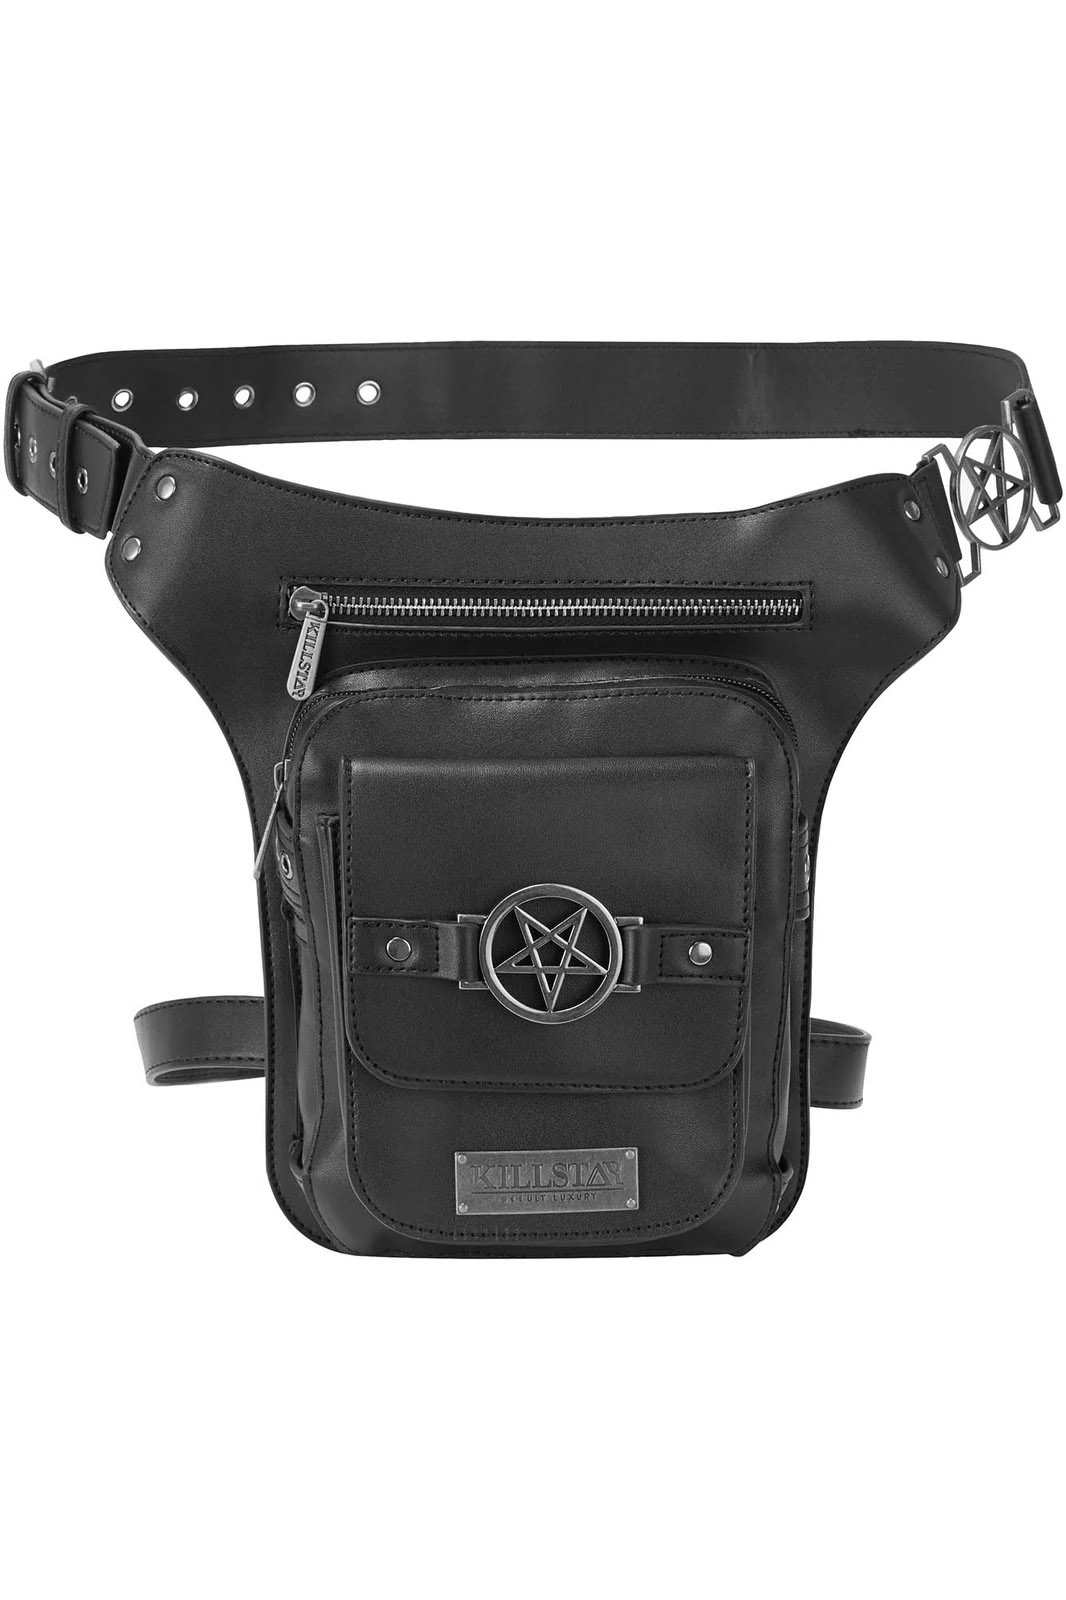 Black Leather Waist Bag Fanny Pack Gothic Designer Bag for 